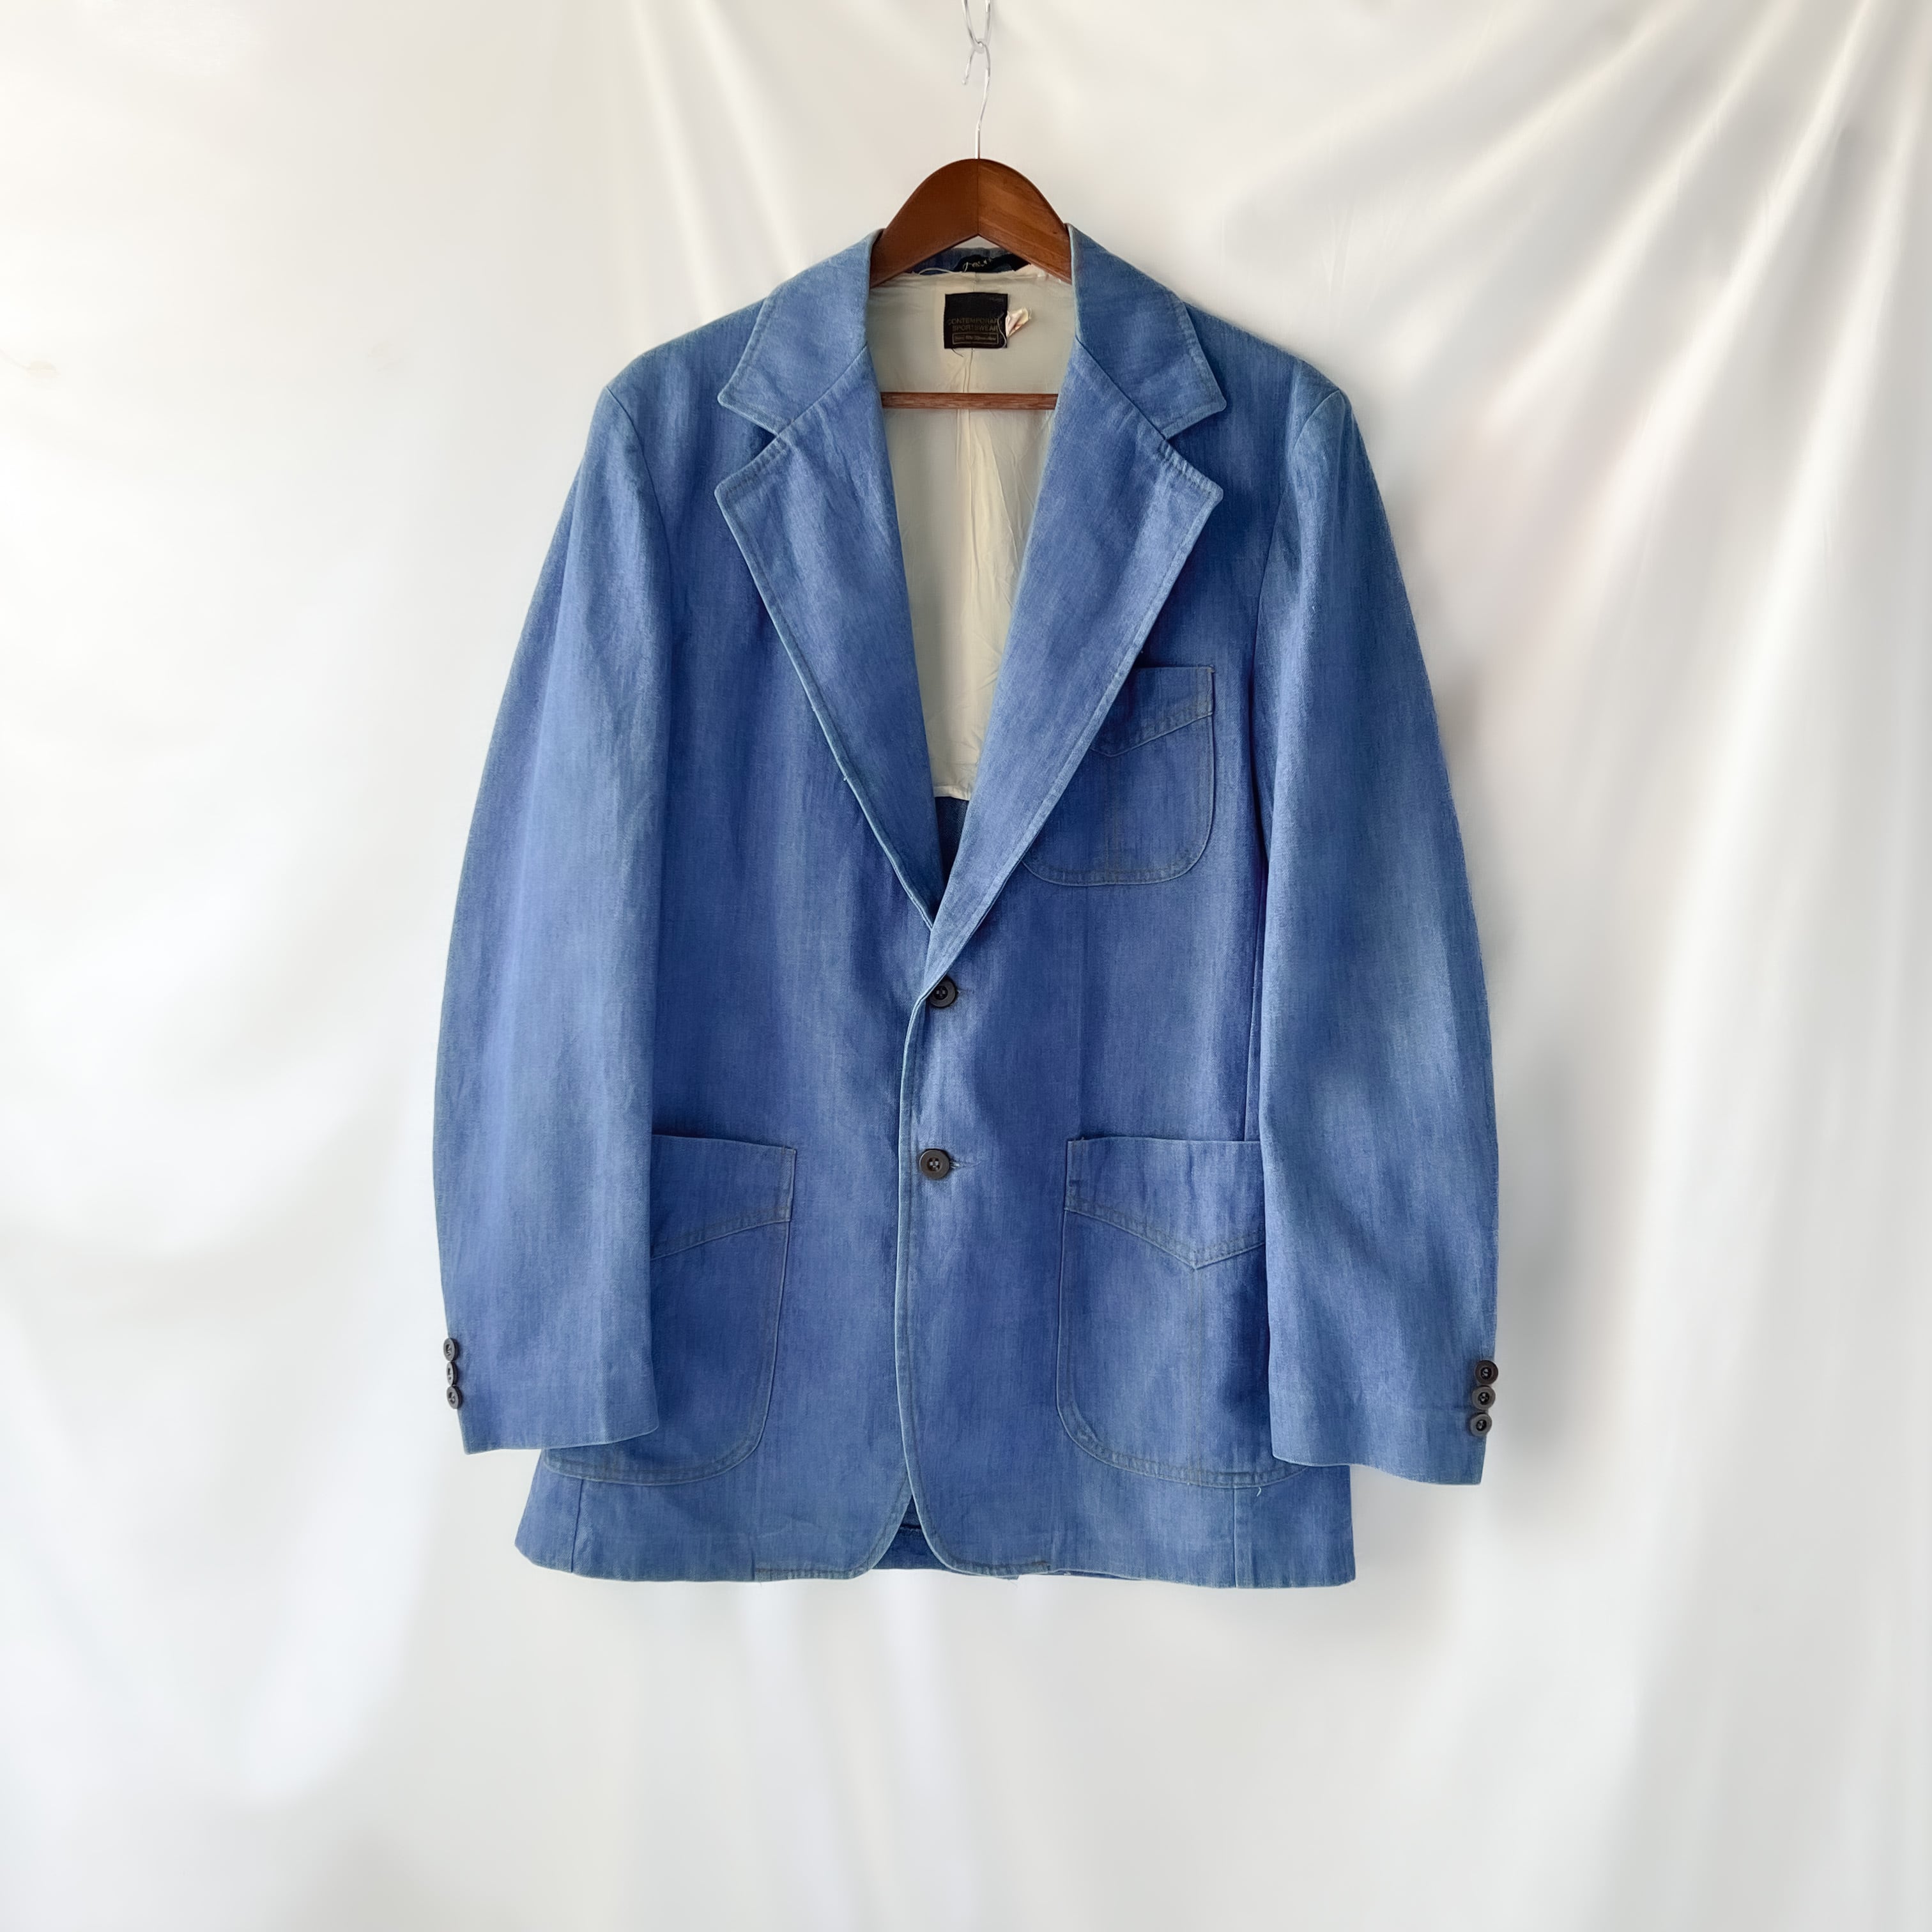 About 70s “Sears” 黒タグ 金色刺繍 Chambray tailored jacket 60年代 70年代 シアーズ シャンブレー  テーラードジャケット